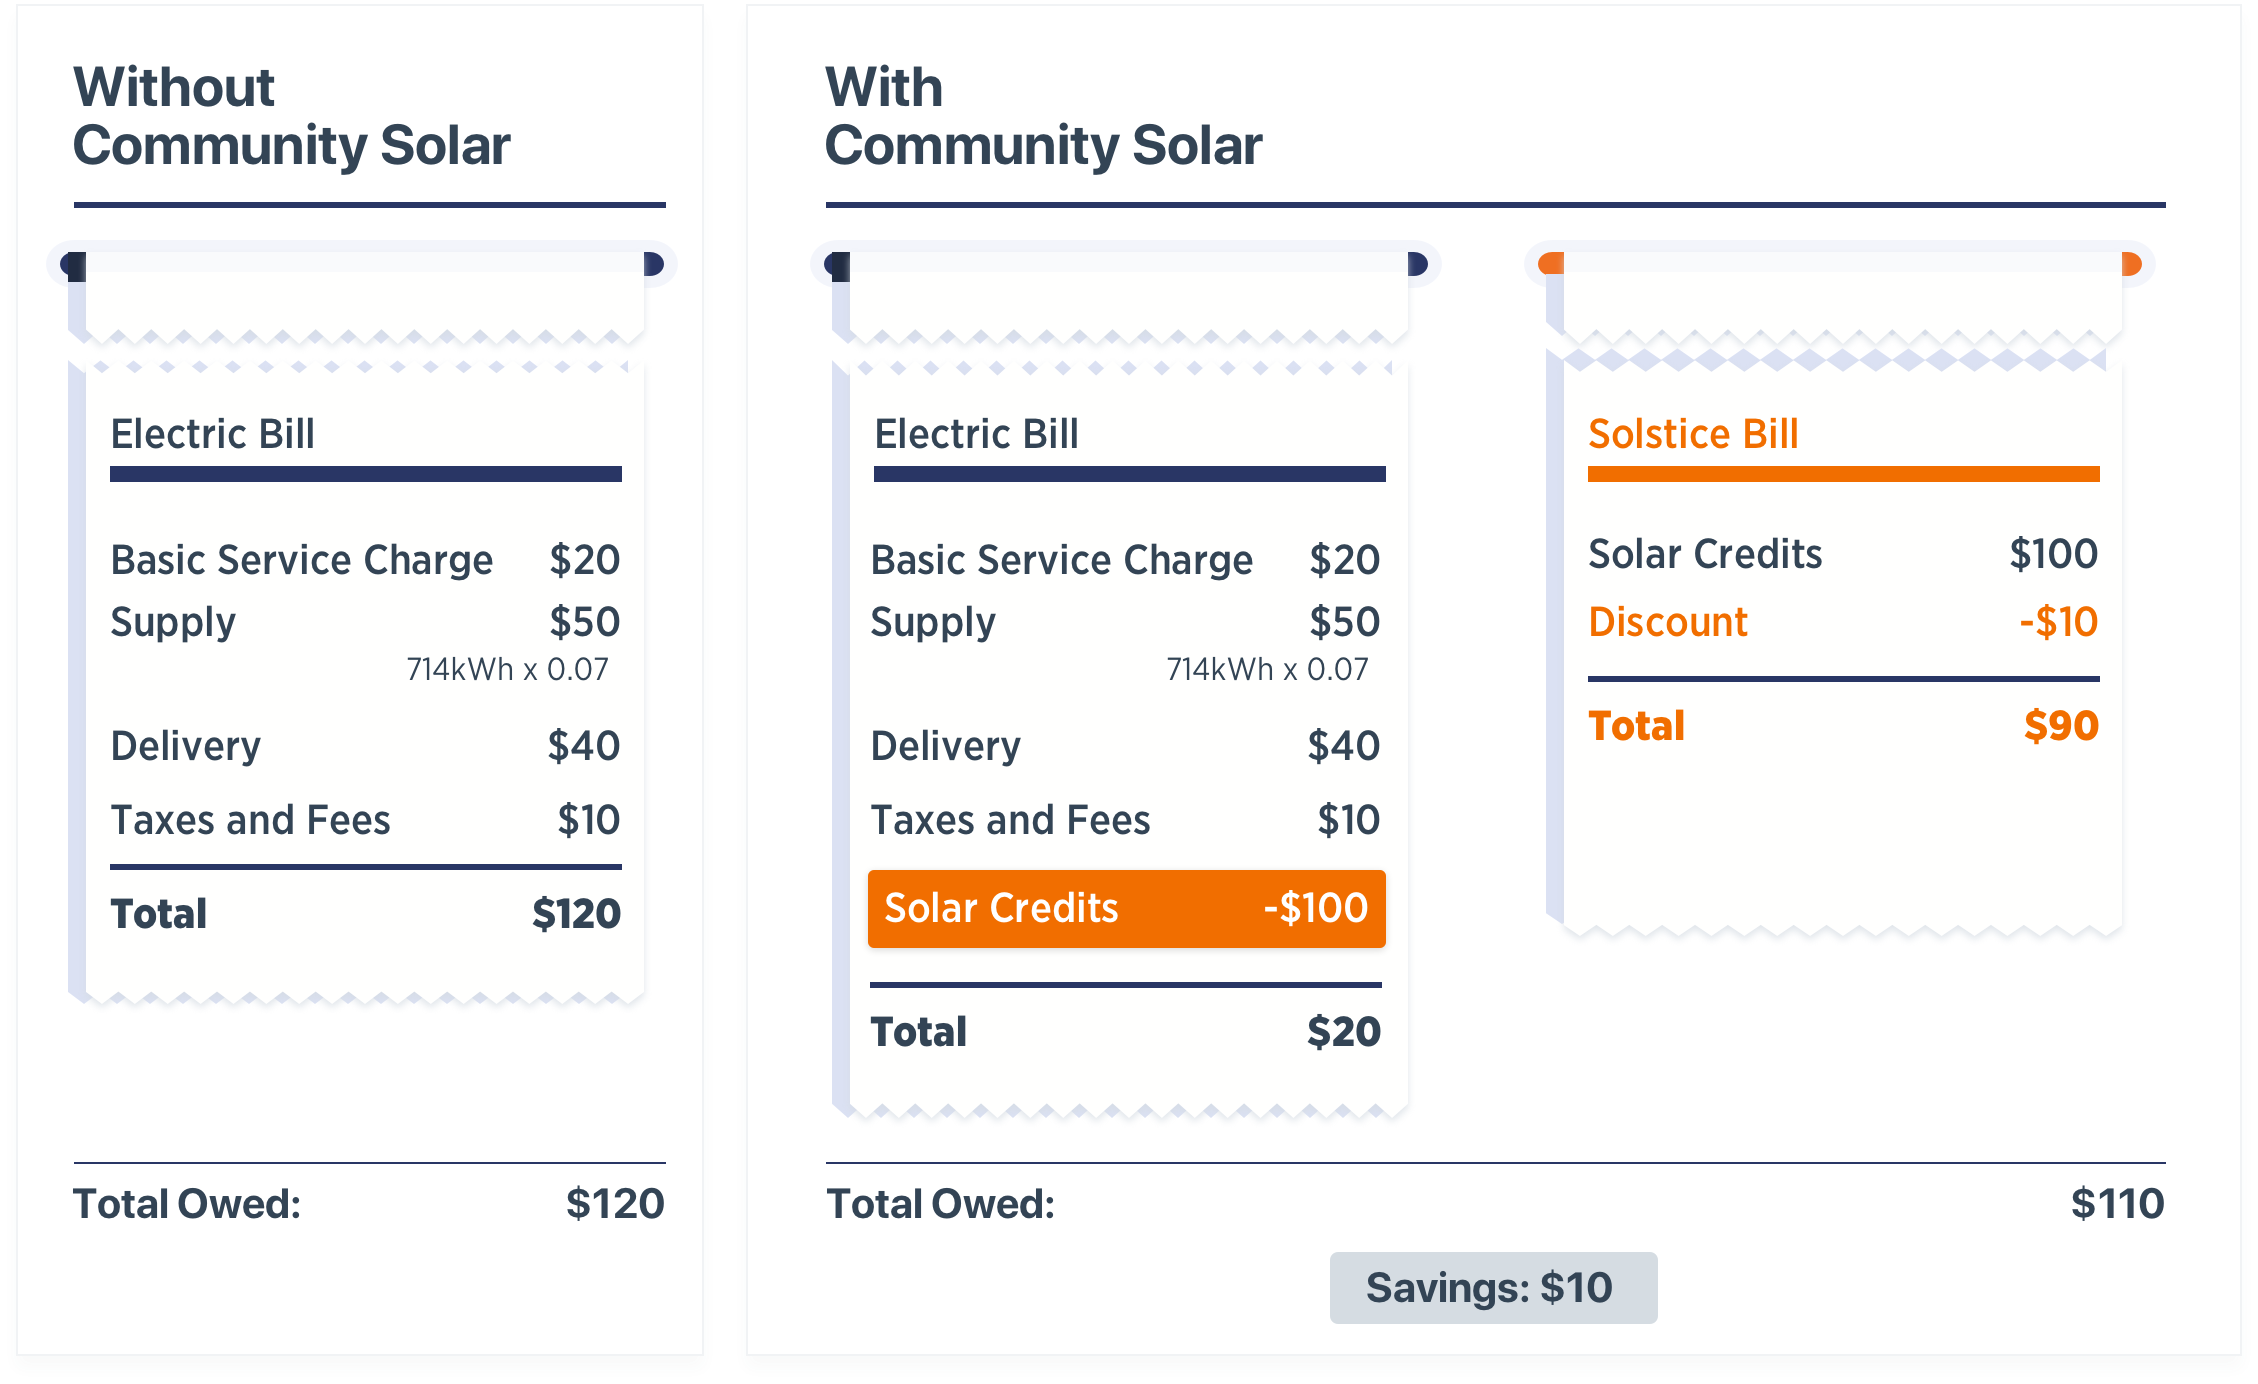 Community Solar electric bill